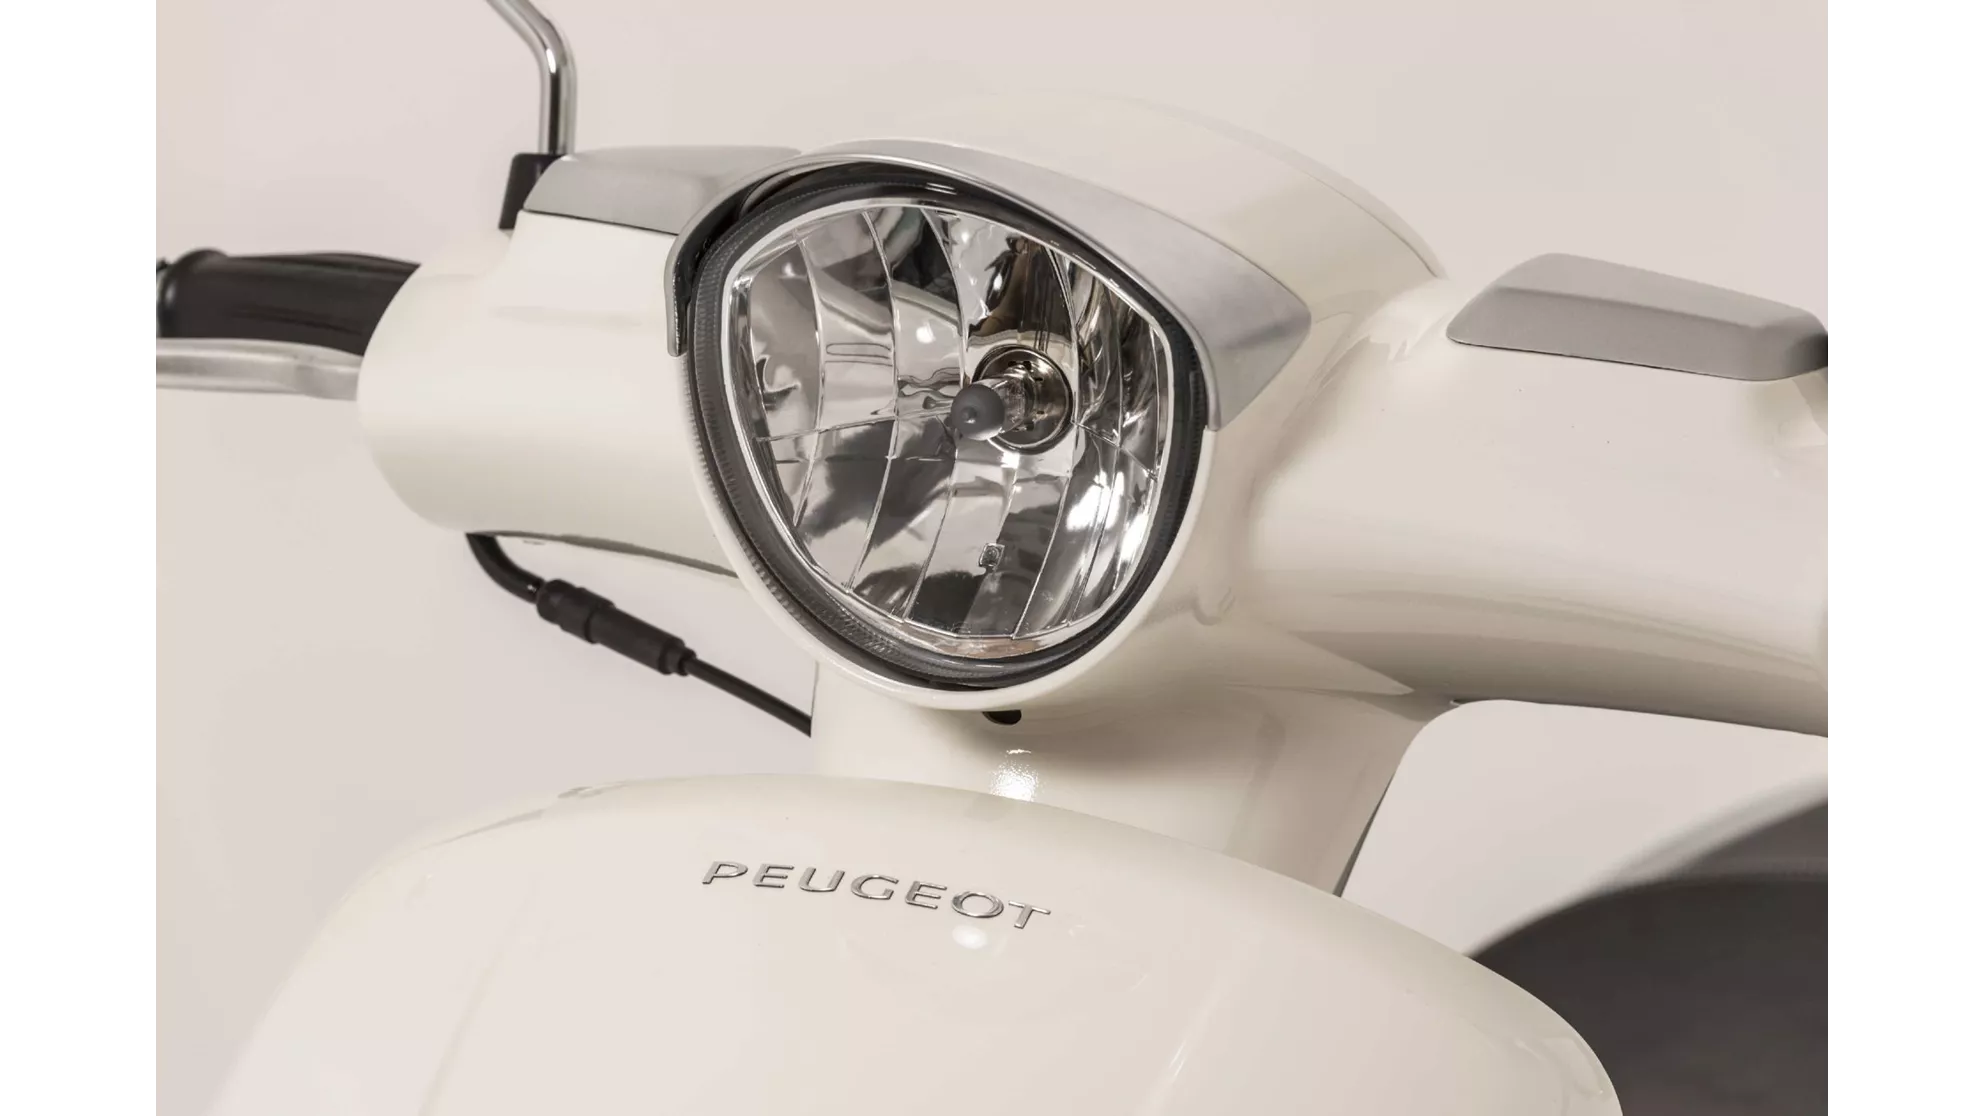 Peugeot Django 50 4T Heritage - Image 9